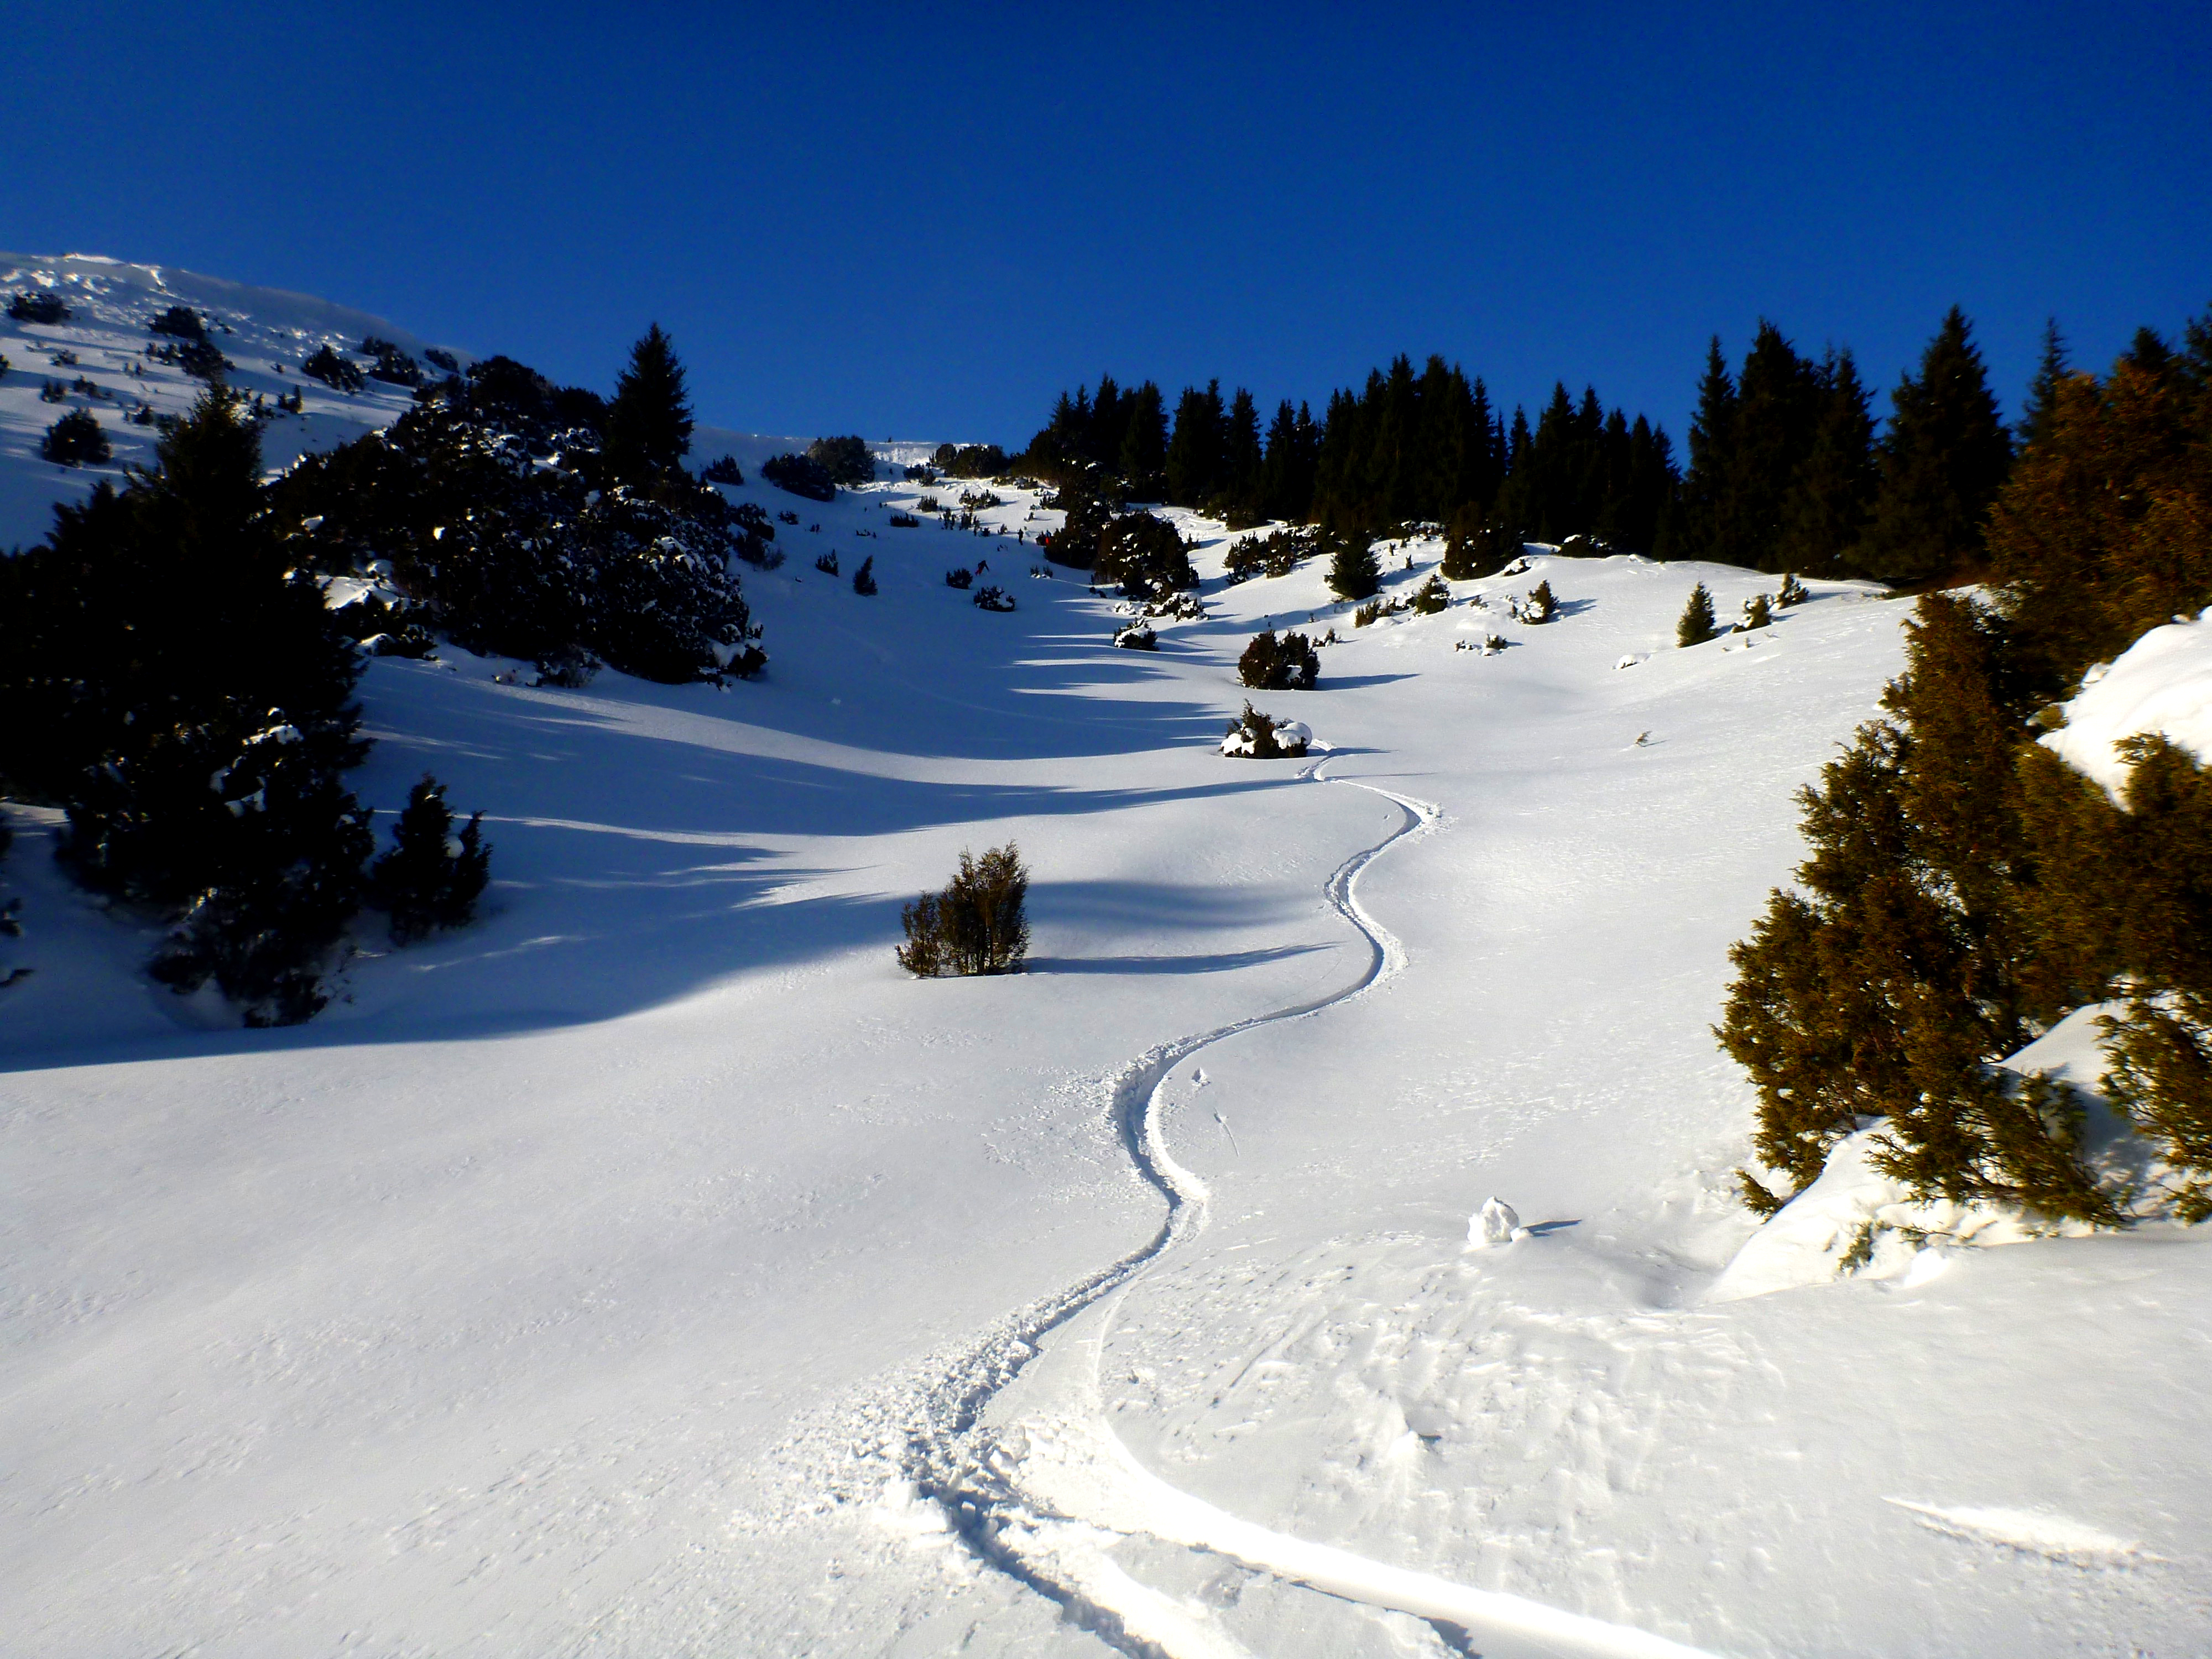 Virgin Powder ski touring snow